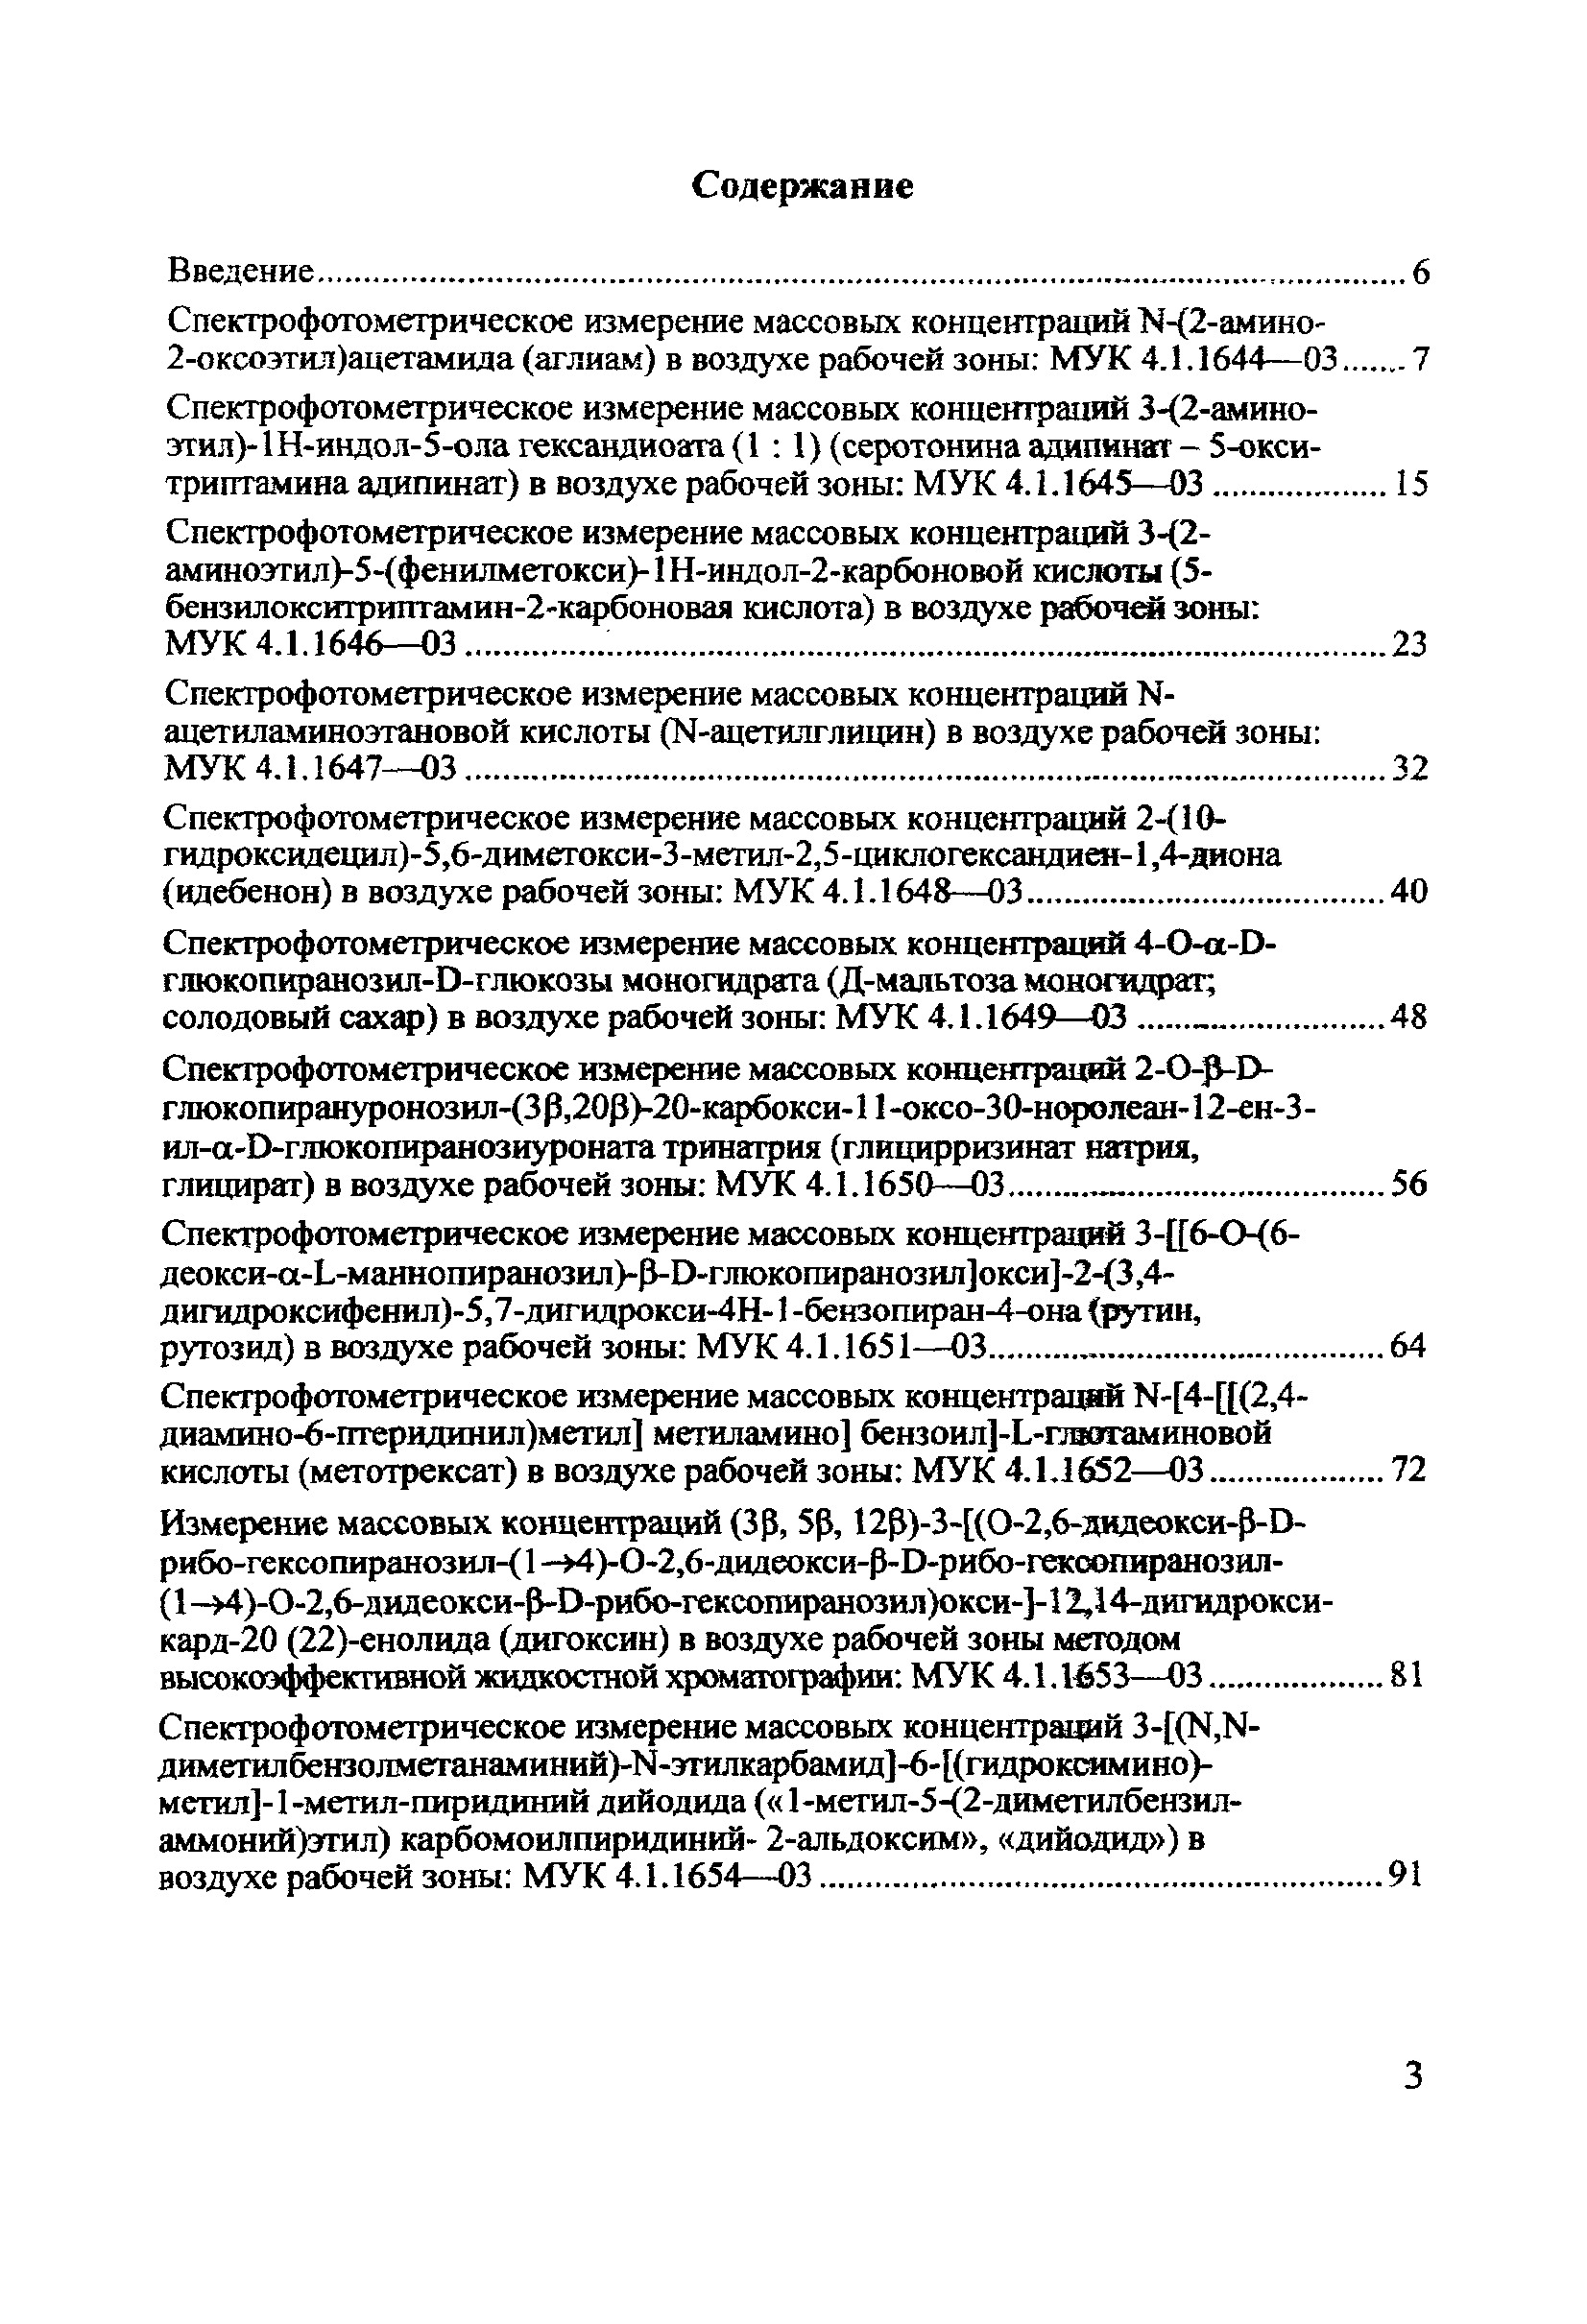 МУК 4.1.1662-03